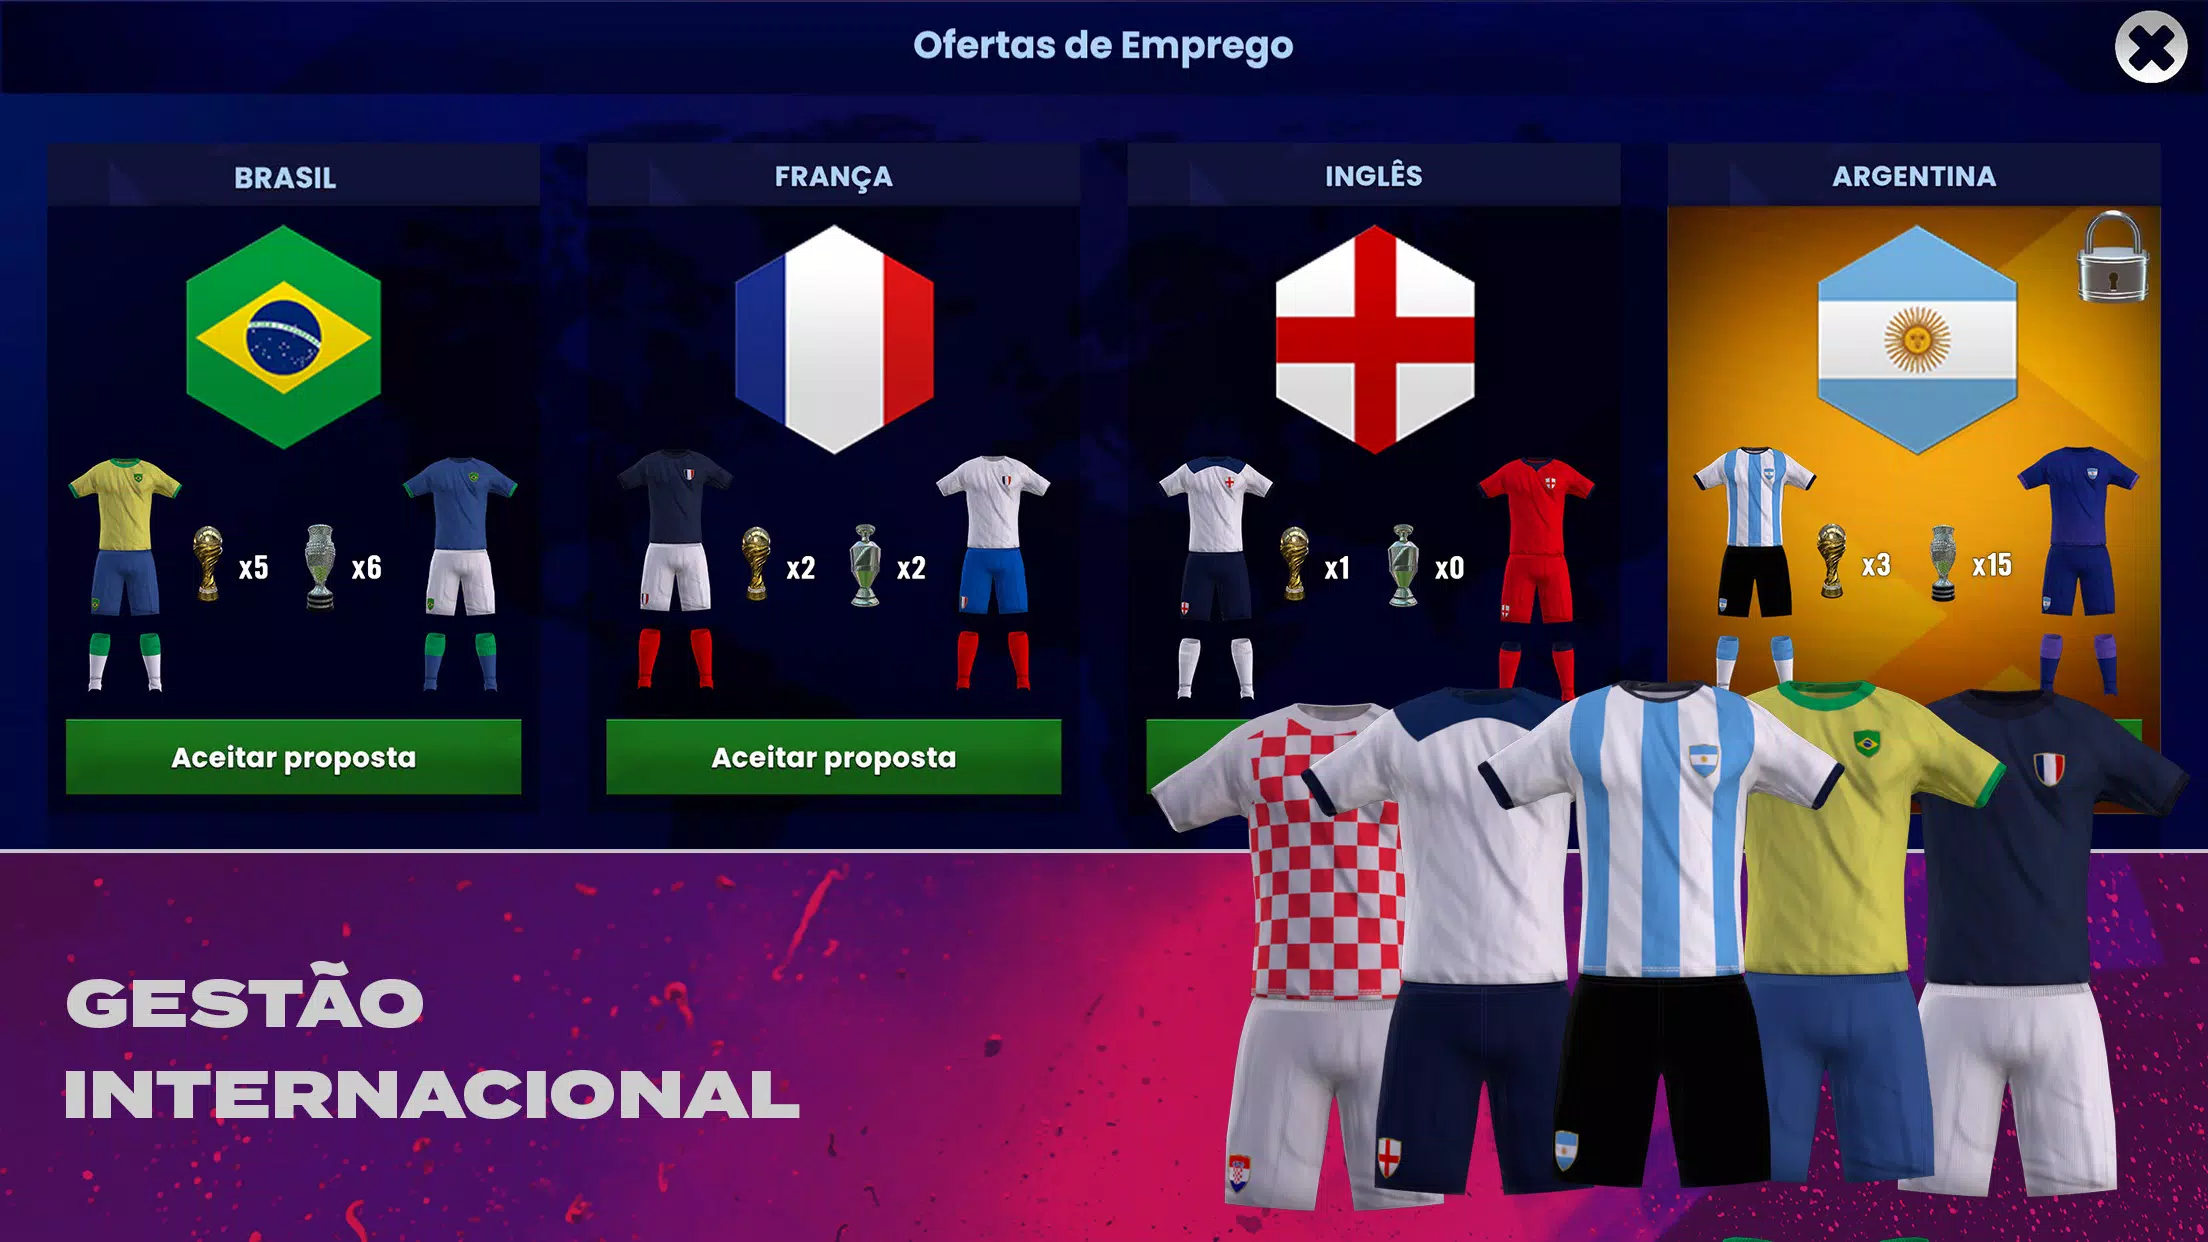 Saiu! Dream League Soccer 2022 - Com Dinheiro Infinito e Novo Menu!! 